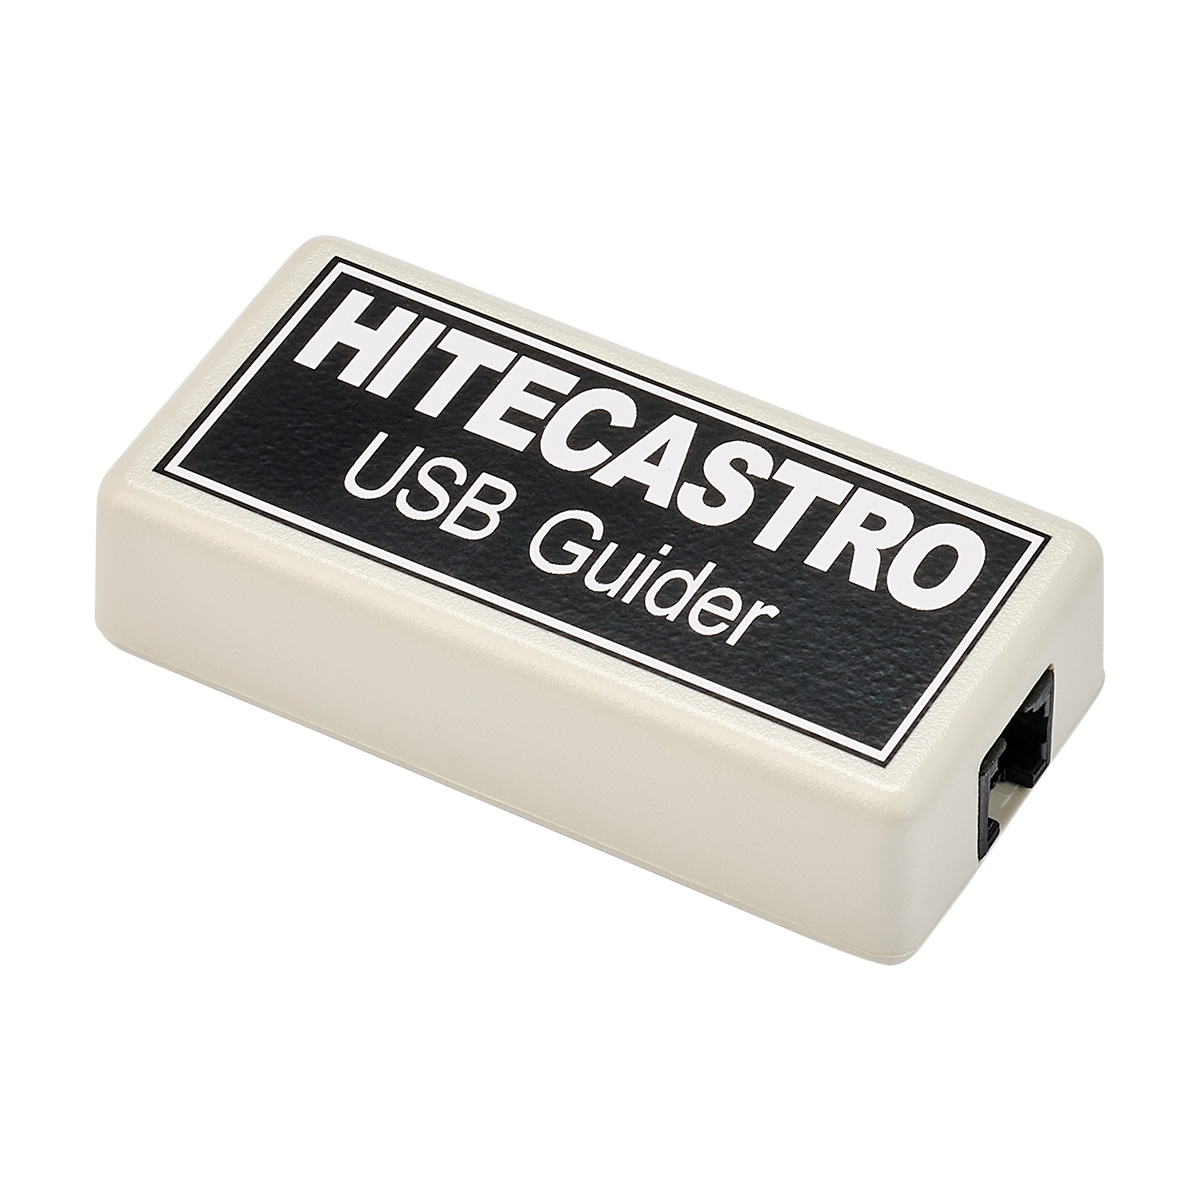 HitecAstro USB ST4 Guider